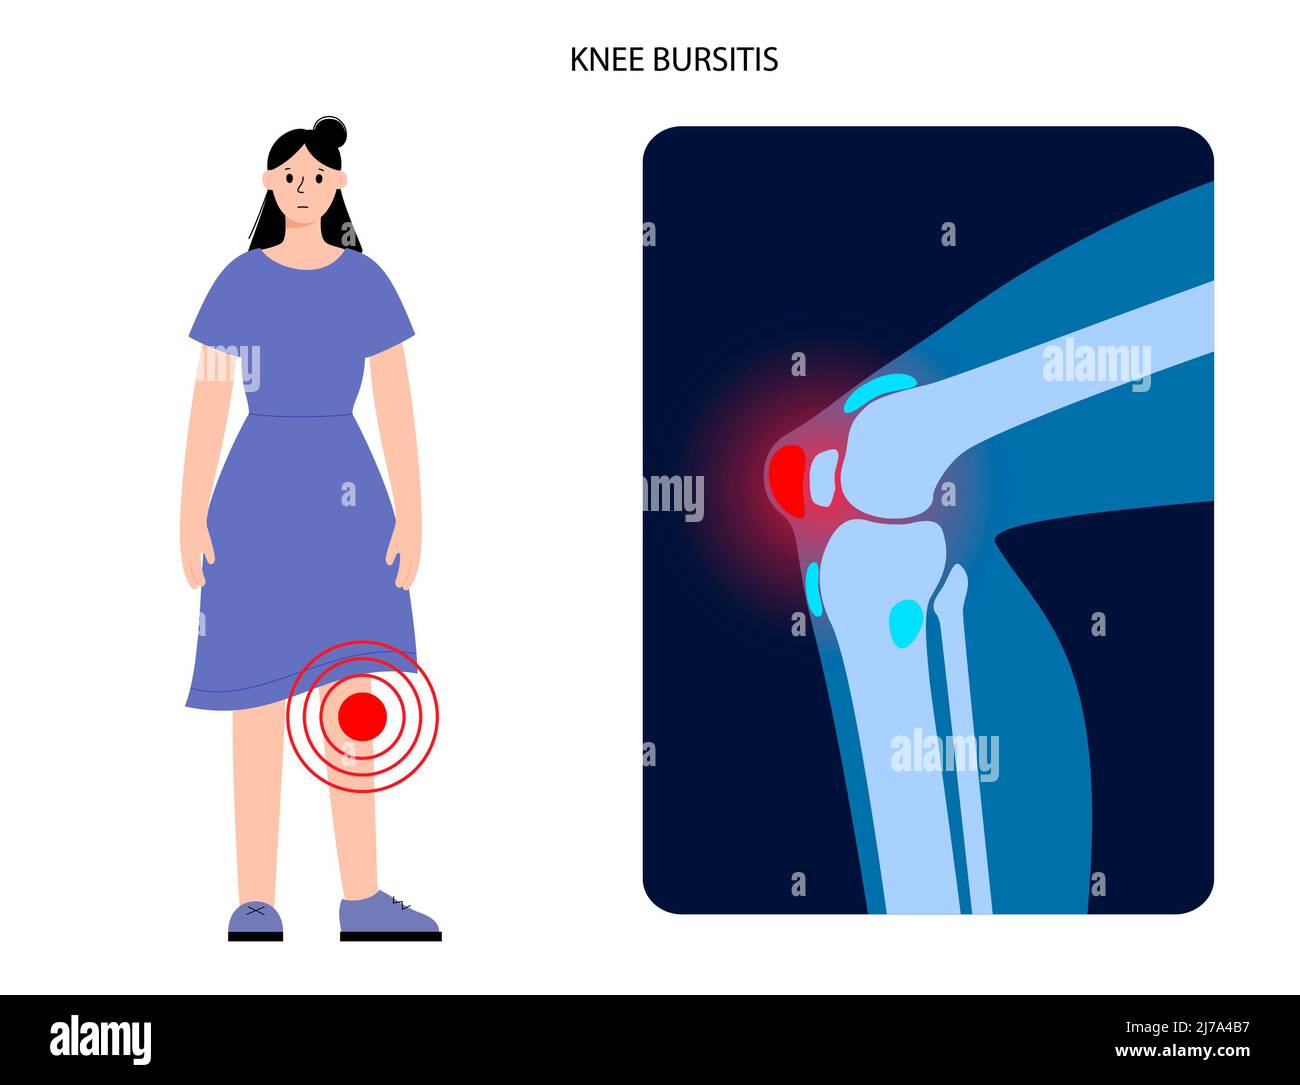 Bursite du genou, illustration conceptuelle Banque D'Images